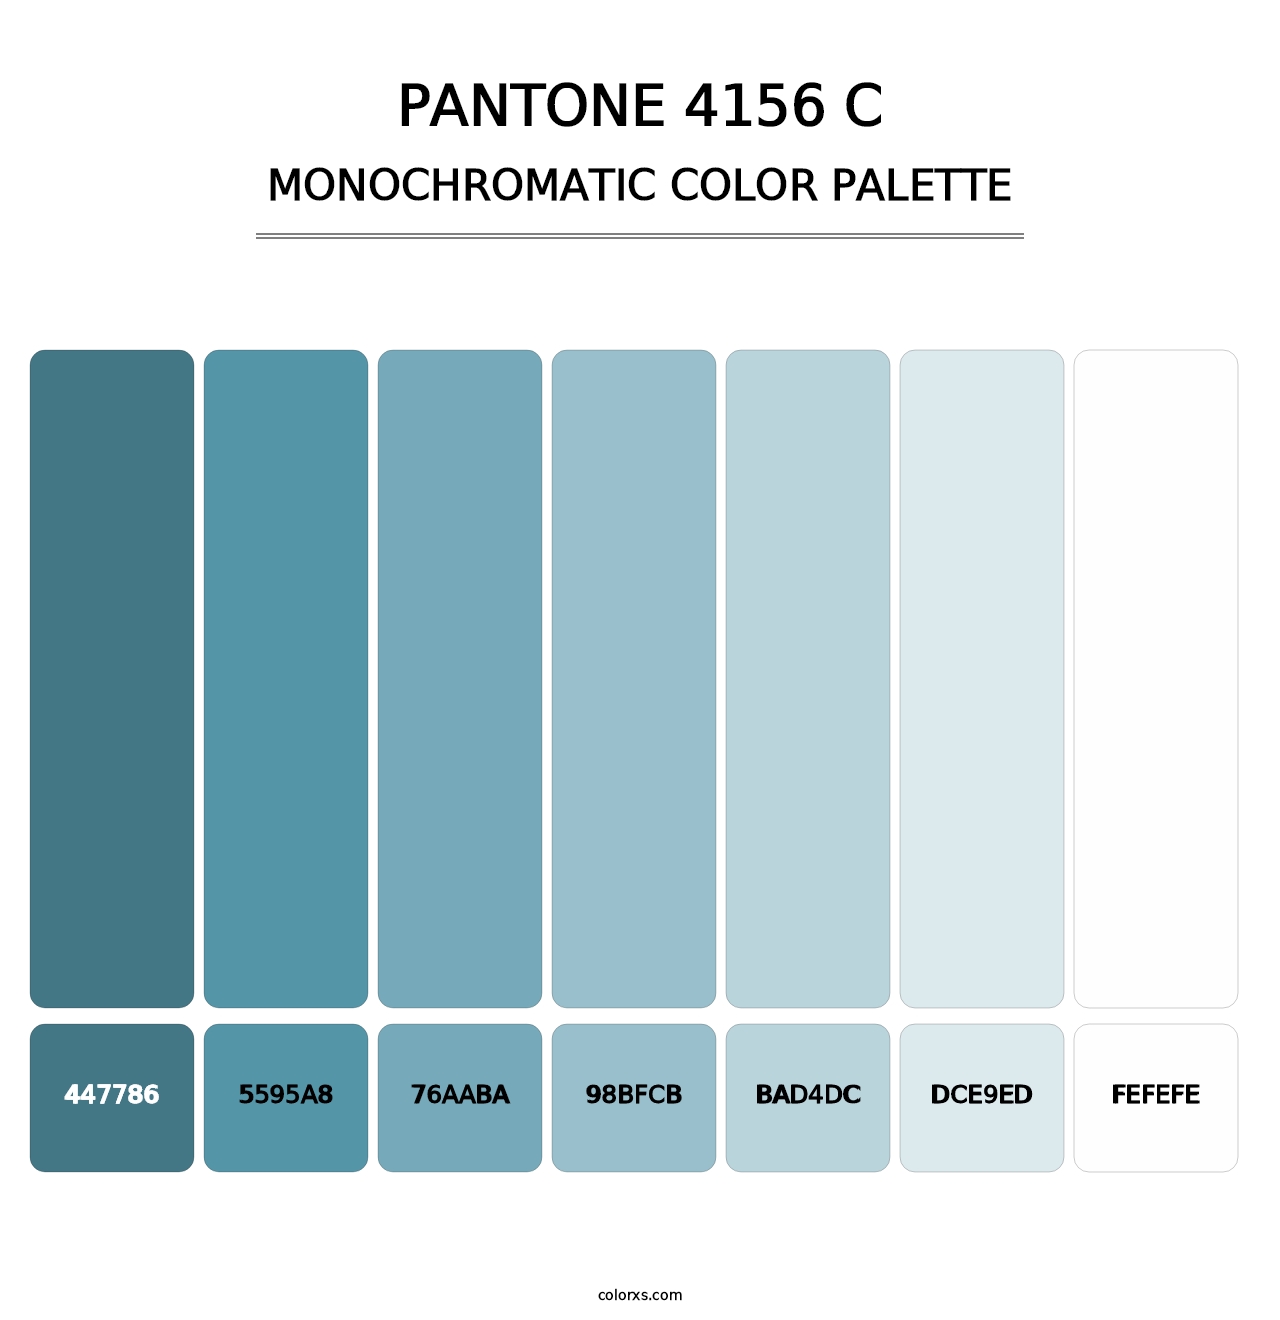 PANTONE 4156 C - Monochromatic Color Palette